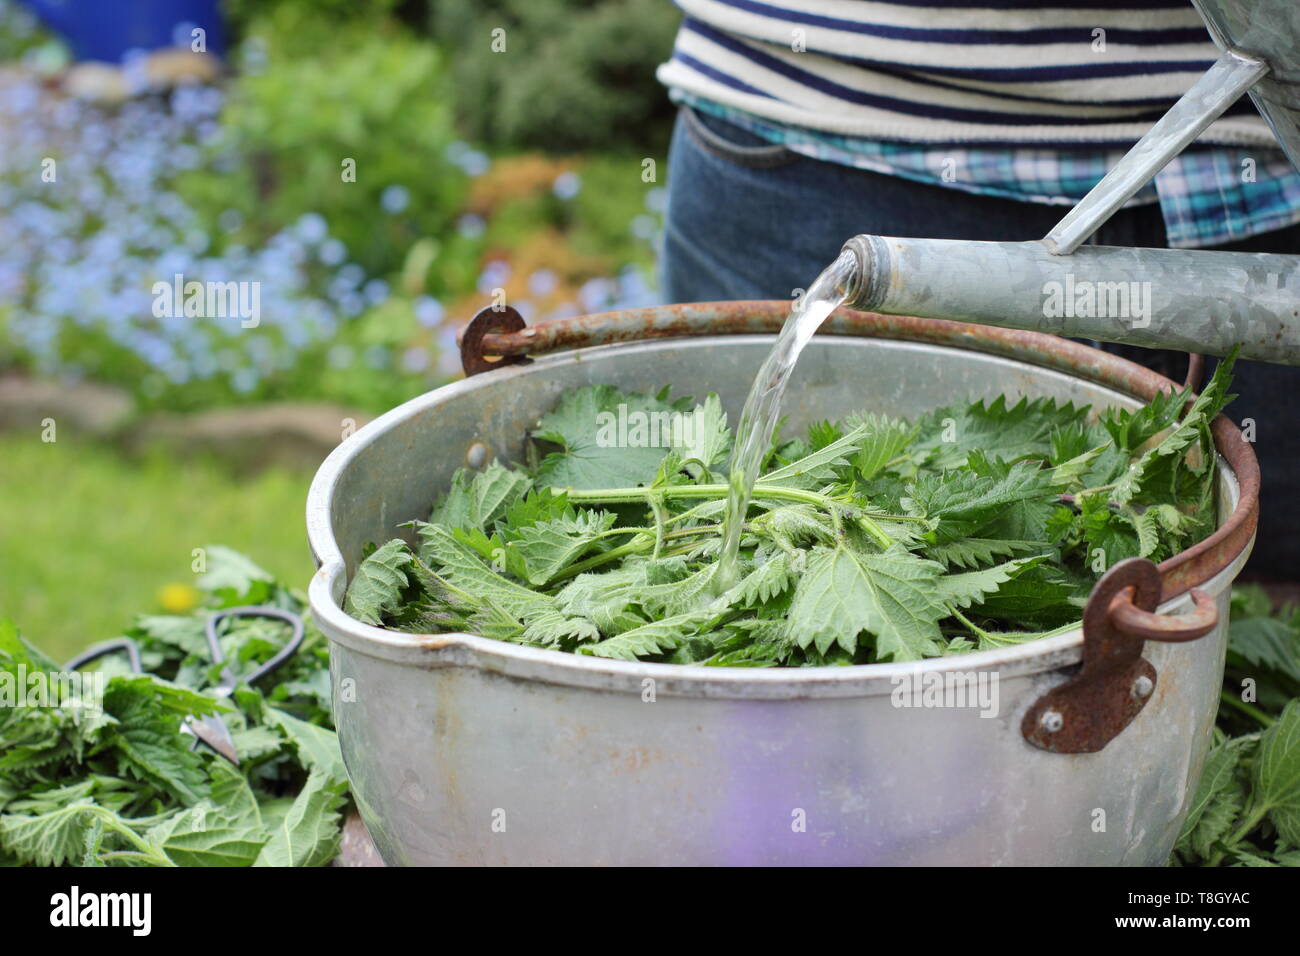 Urtica dioica. Home gemacht flüssigen pflanzlichen Futtermitteln durch das Hinzufügen von Wasser zu Brennnesseln. Großbritannien Stockfoto